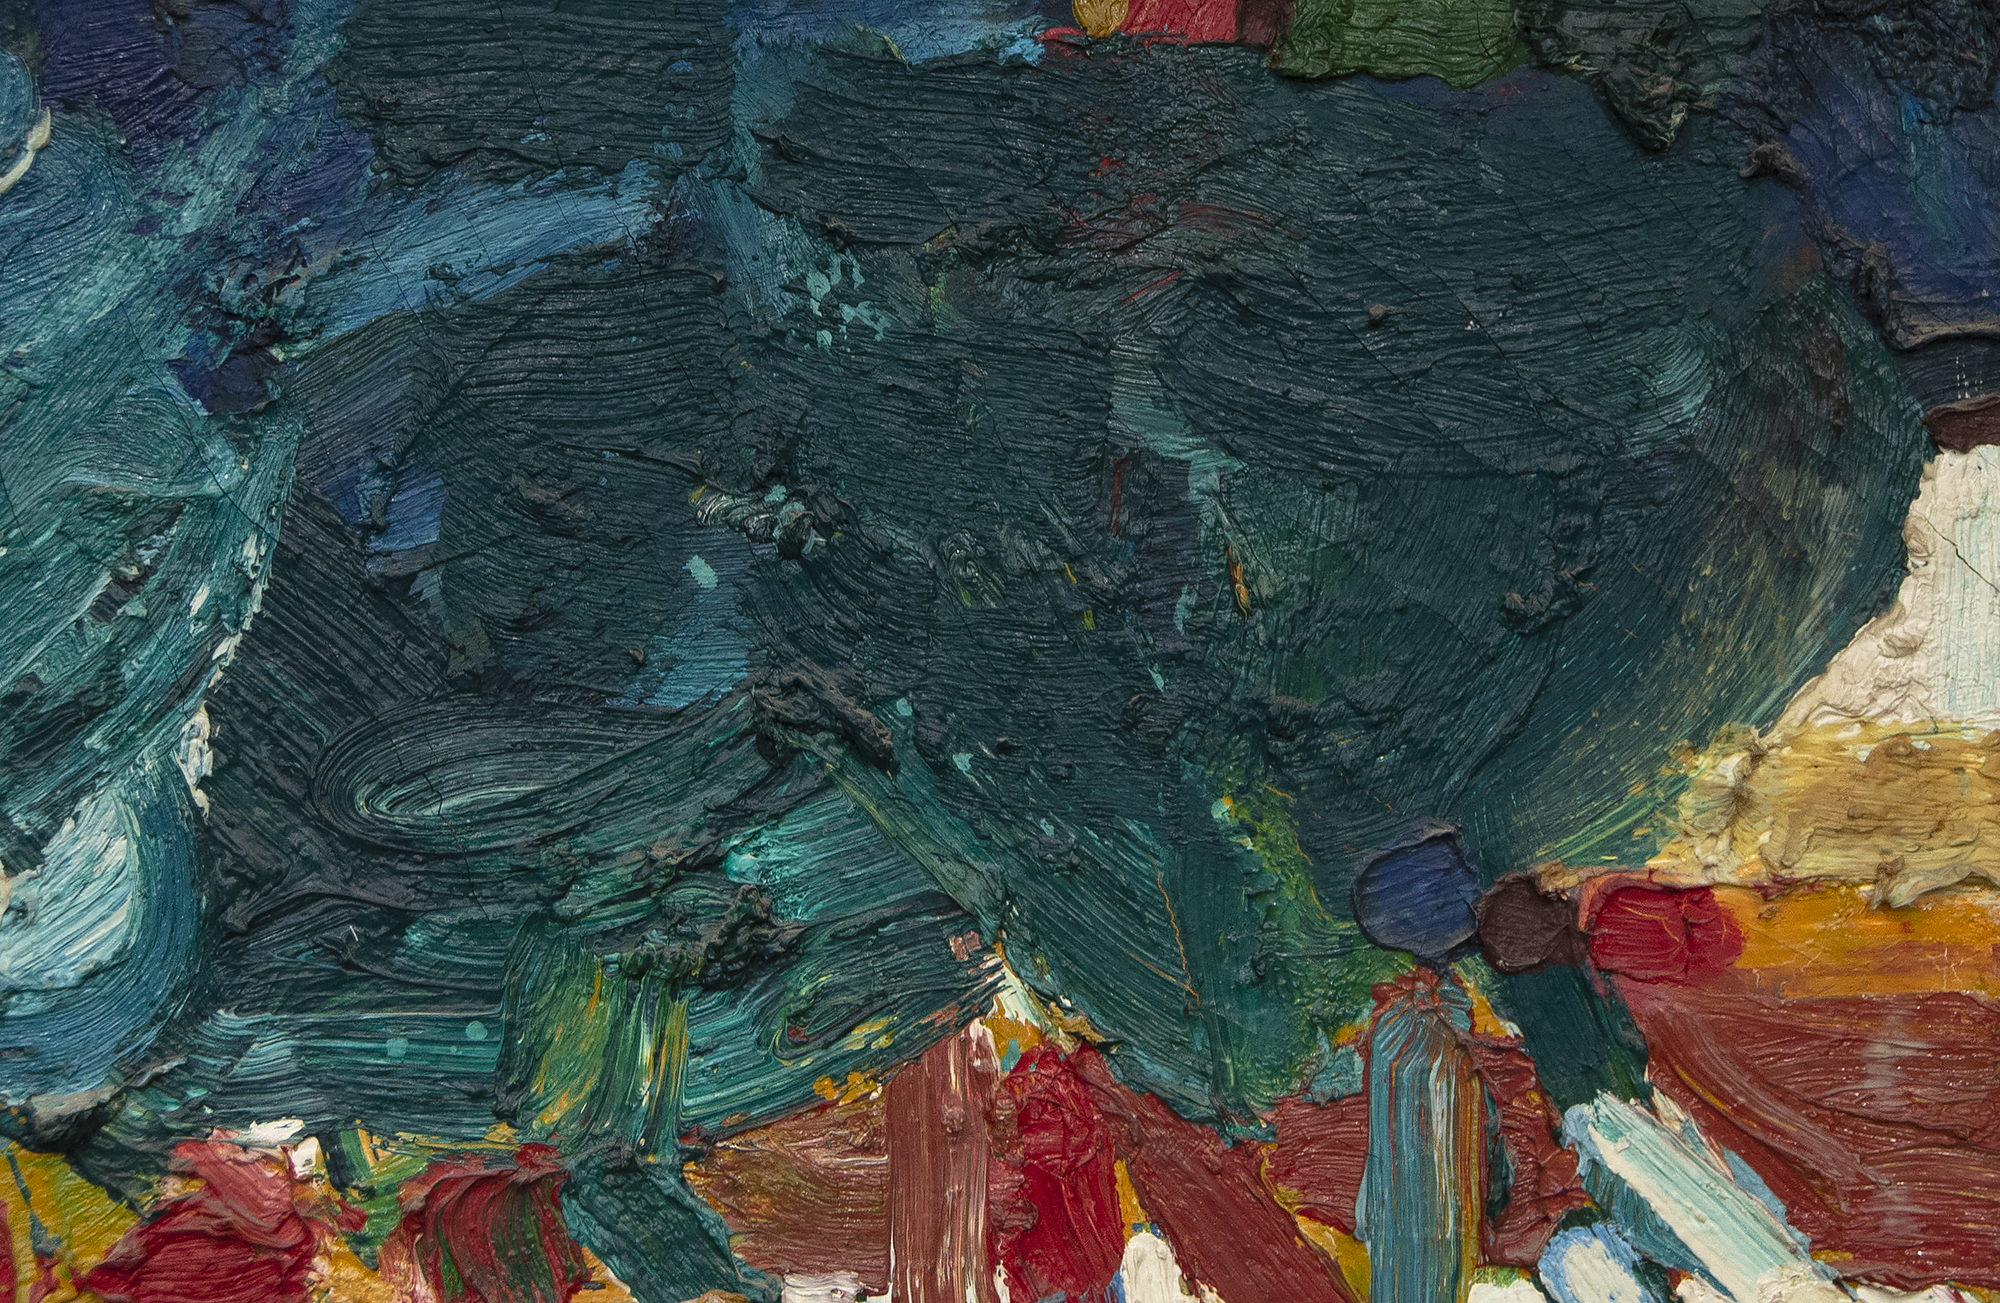 Le déjeuner de l'artiste de la région de la Baie Roland Petersen est une huile sur toile de 1961, une année critique pour sa série de pique-niques la plus connue. Son travail de cette période est caractérisé par un empâtement épais et une couleur riche. Profondément influencé par les études de Hans Hoffman, Petersen expérimente l'abstraction, mêlant ici des styles abstraits et figuratifs. Peint lorsque Petersen avait 35 ans, Luncheon s'inscrit dans un cadre temporel qui comprend son exposition personnelle à guichets fermés en 1962 à la Staempfli Gallery de New York, son exposition personnelle à Esther-Robles à Los Angeles et la bourse Guggenheim Fellowship qui lui a permis d'étudier à Paris.